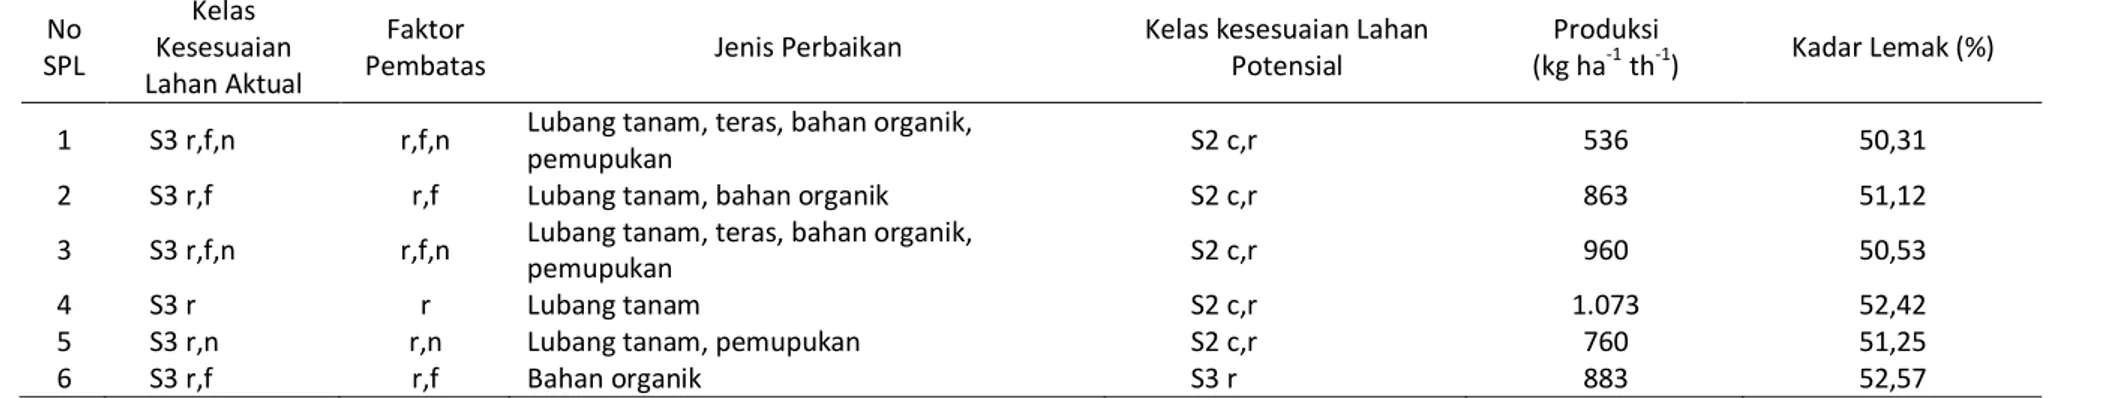 Tabel 8. Hasil klasifikasi kesesuaian lahan aktual dan potensial Klaster Tangse  No  SPL  Kelas  Kesesuaian  Lahan Aktual  Faktor 